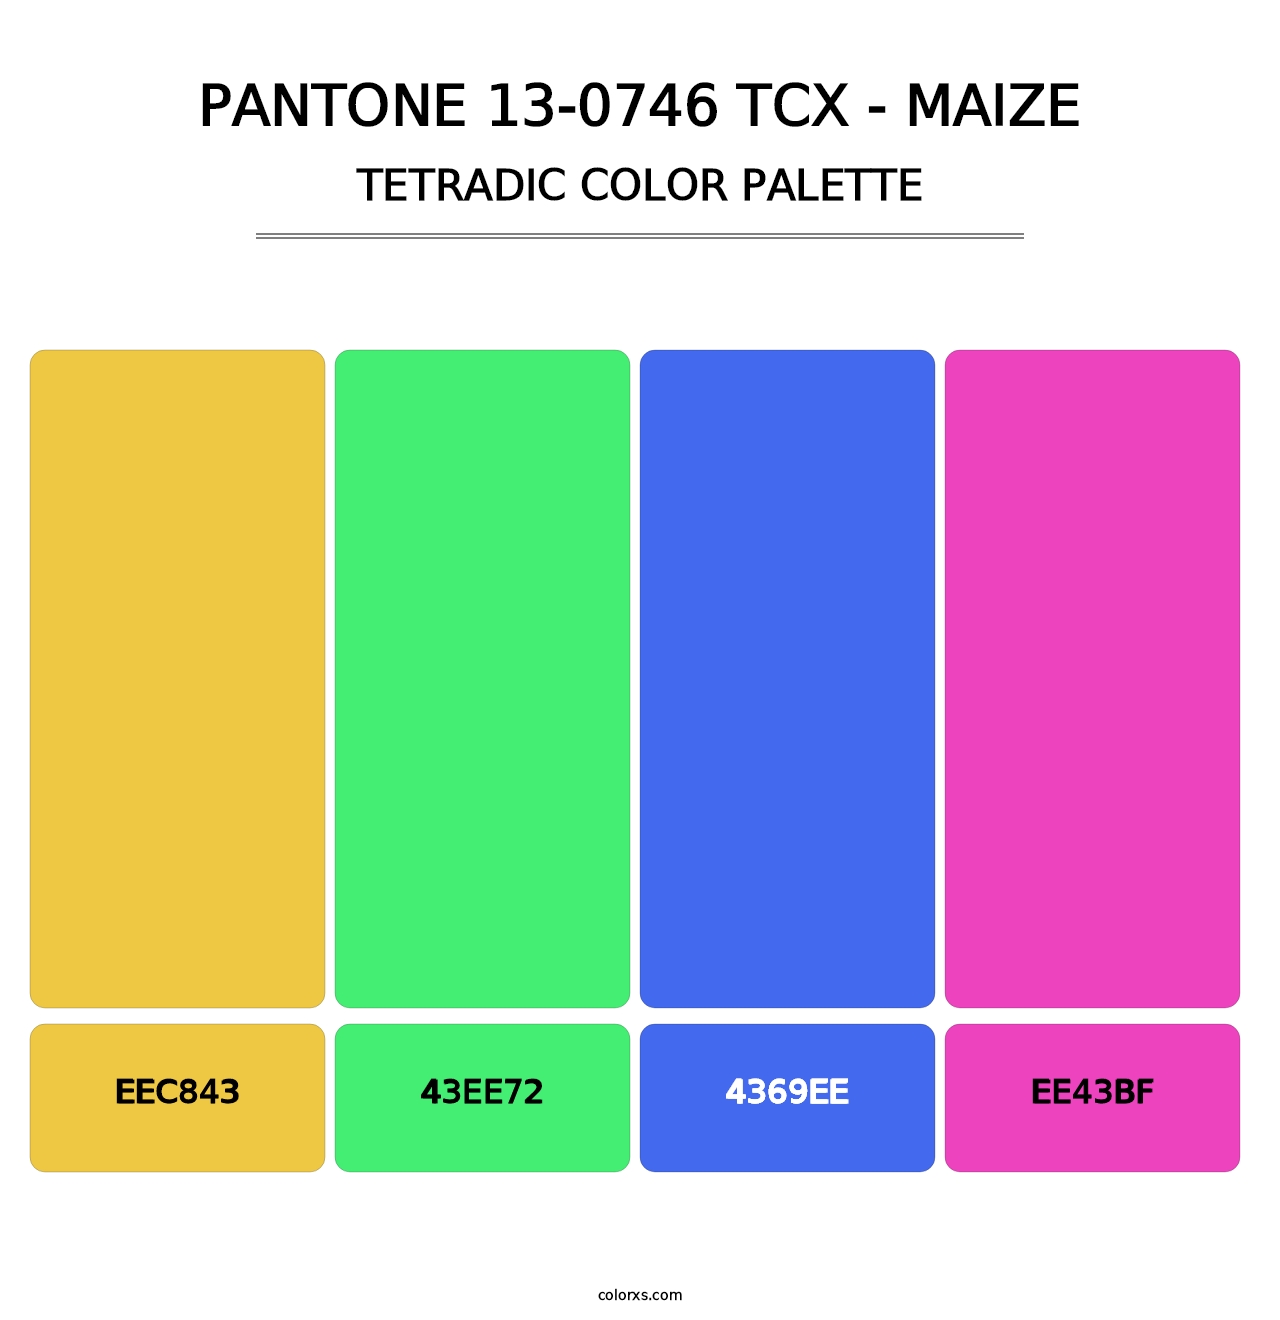 PANTONE 13-0746 TCX - Maize - Tetradic Color Palette